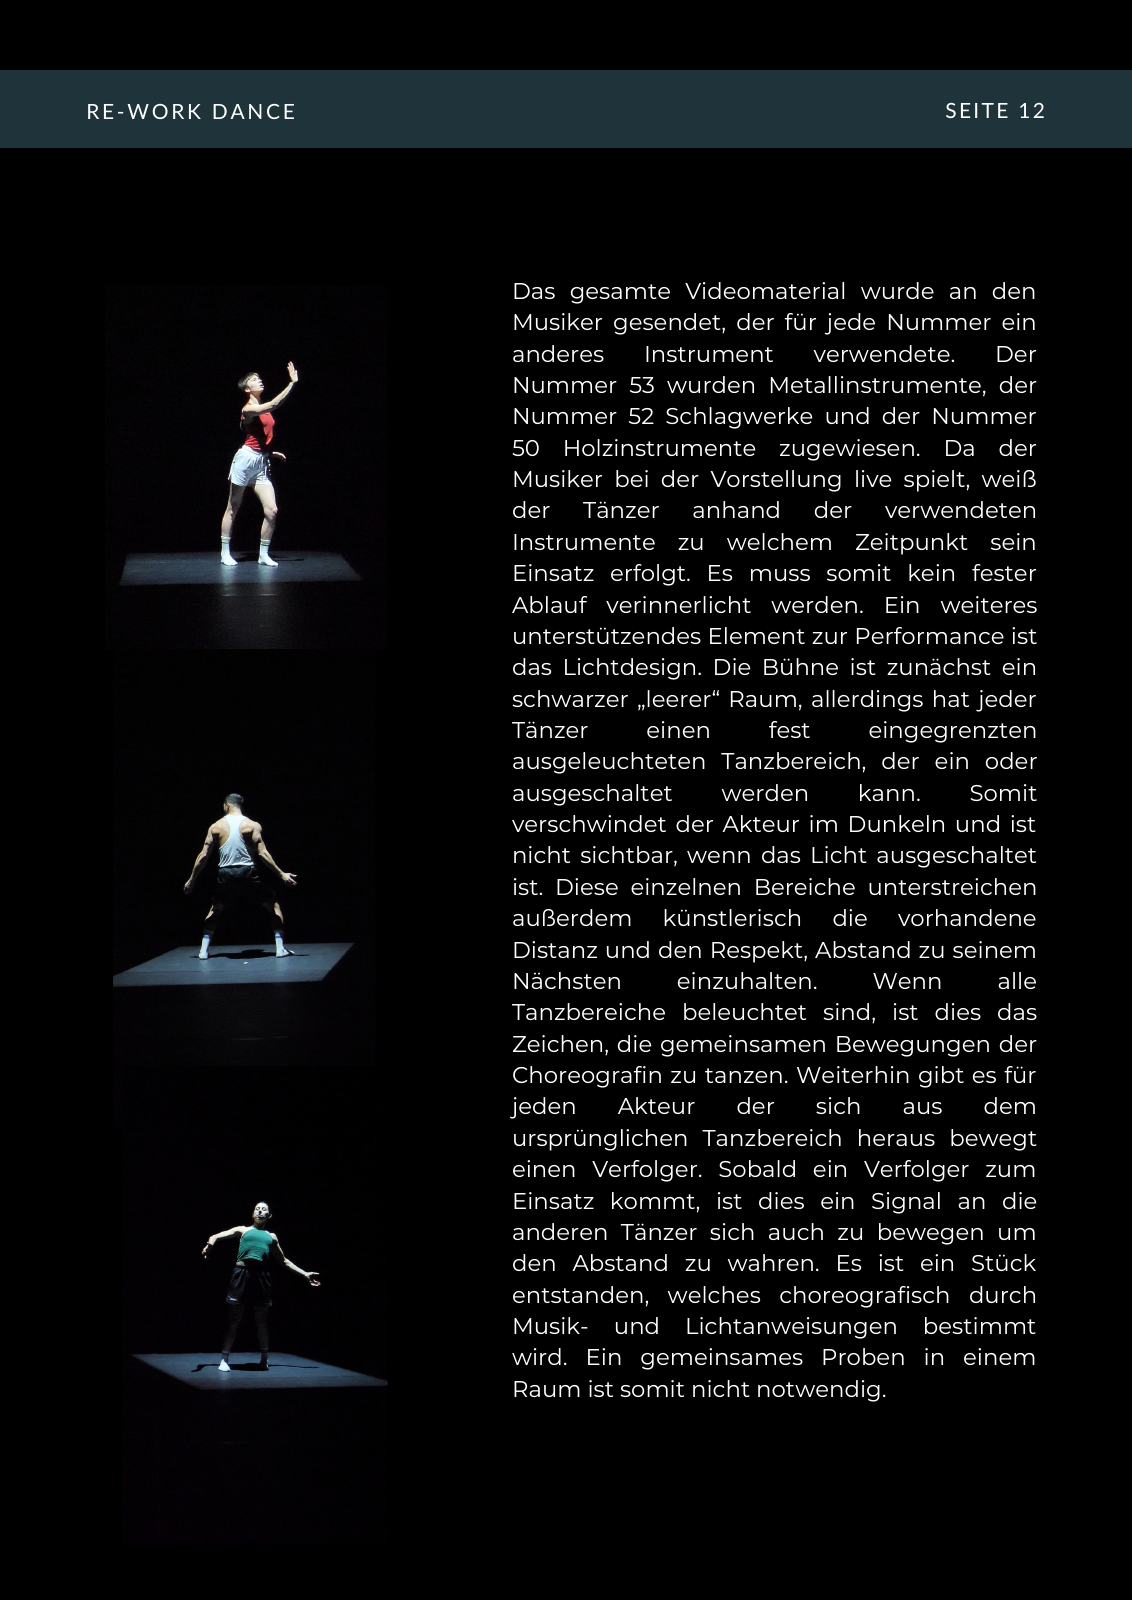 Vorschau RE-WORK DANCE Seite 12